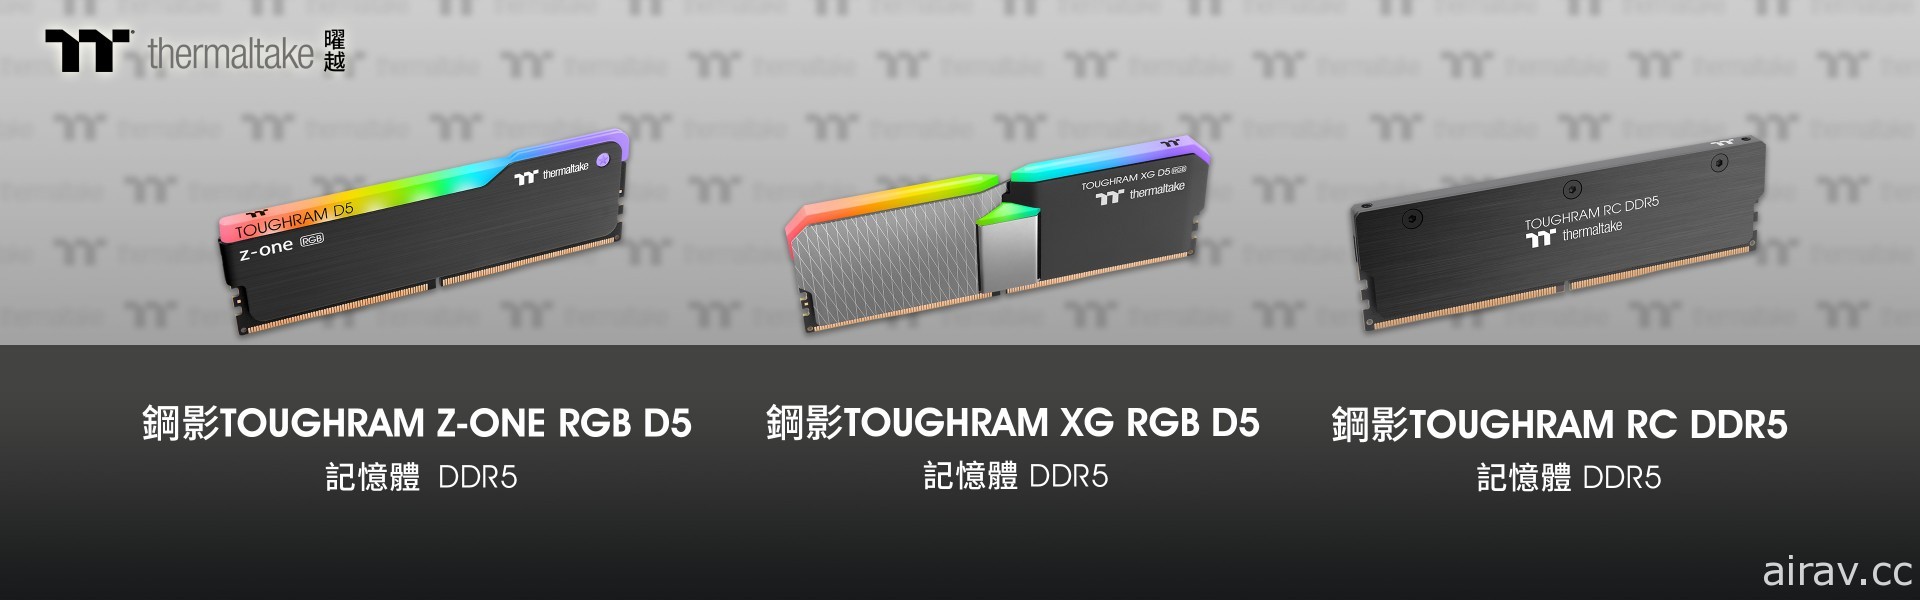 曜越推出全新 DDR5 記憶體系列